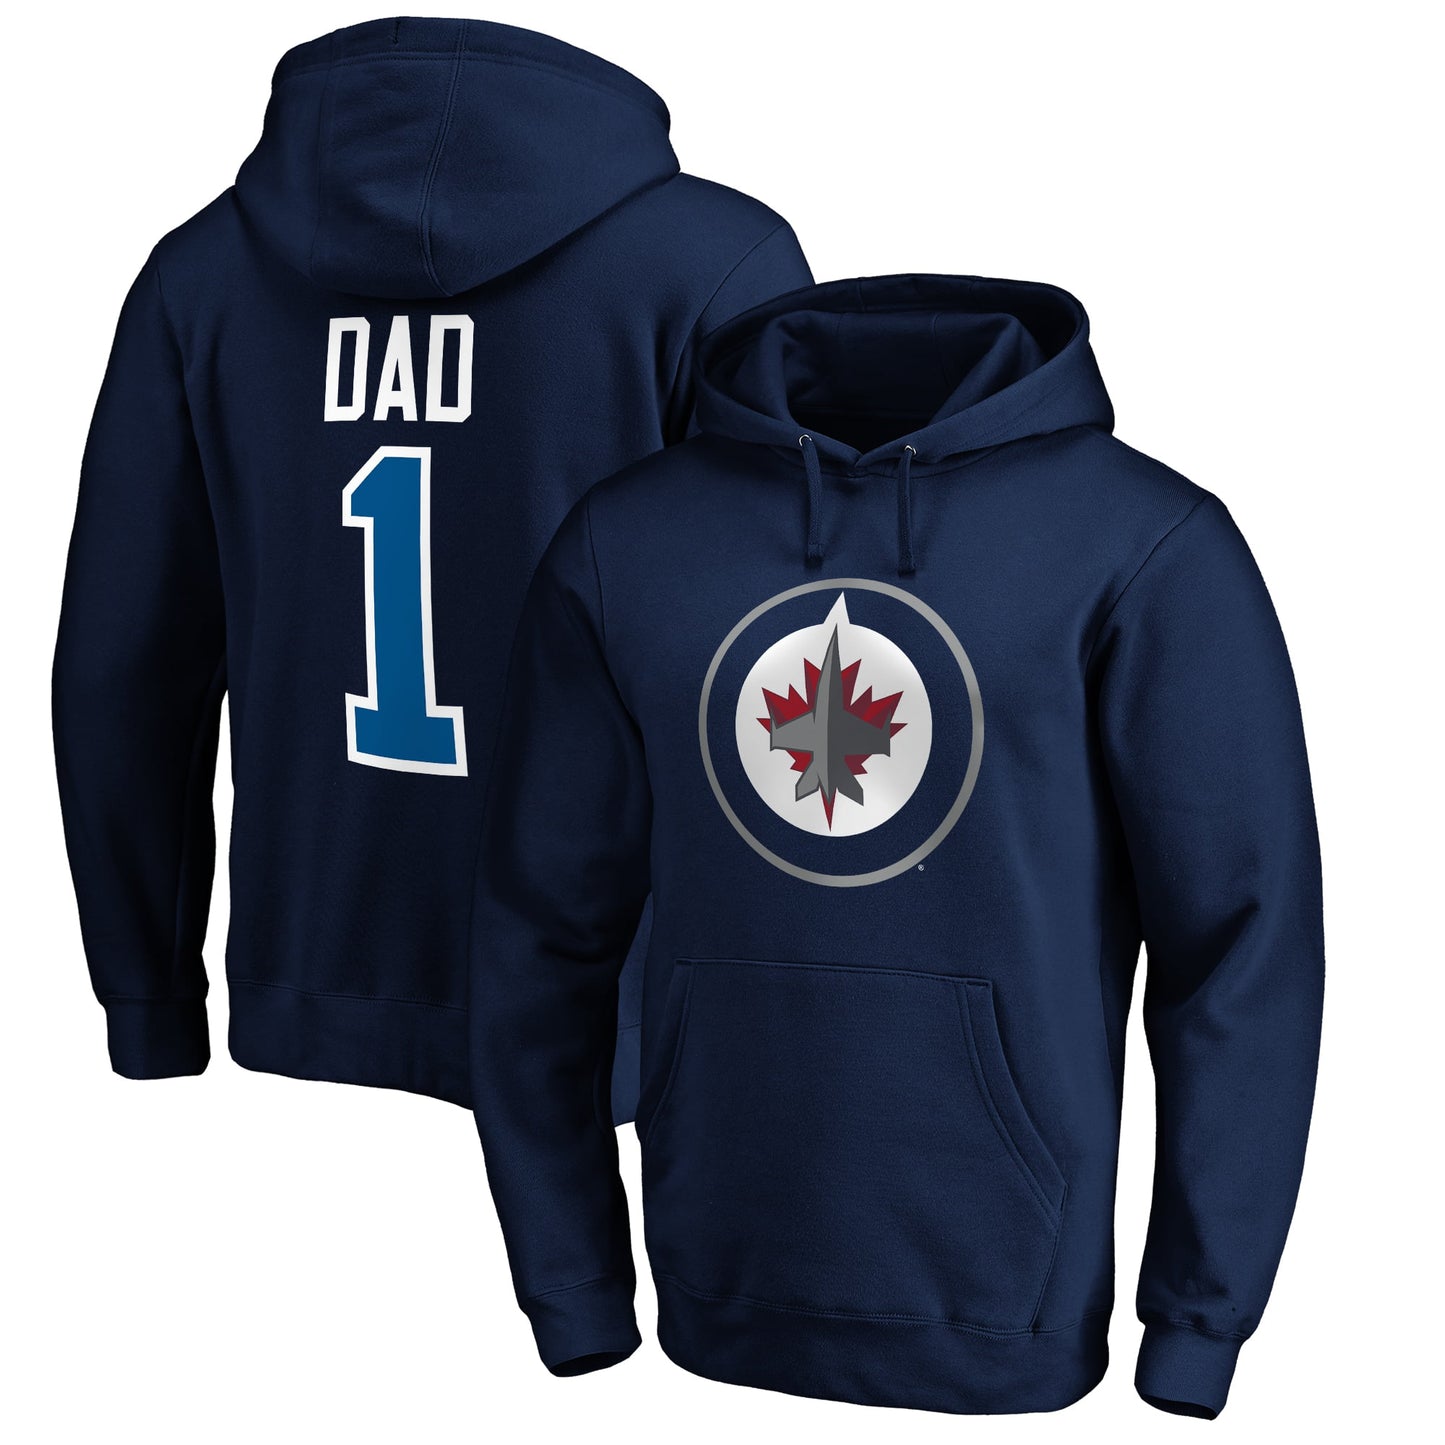 Men's Fanatics Branded Navy Winnipeg Jets #1 Dad Pullover Hoodie